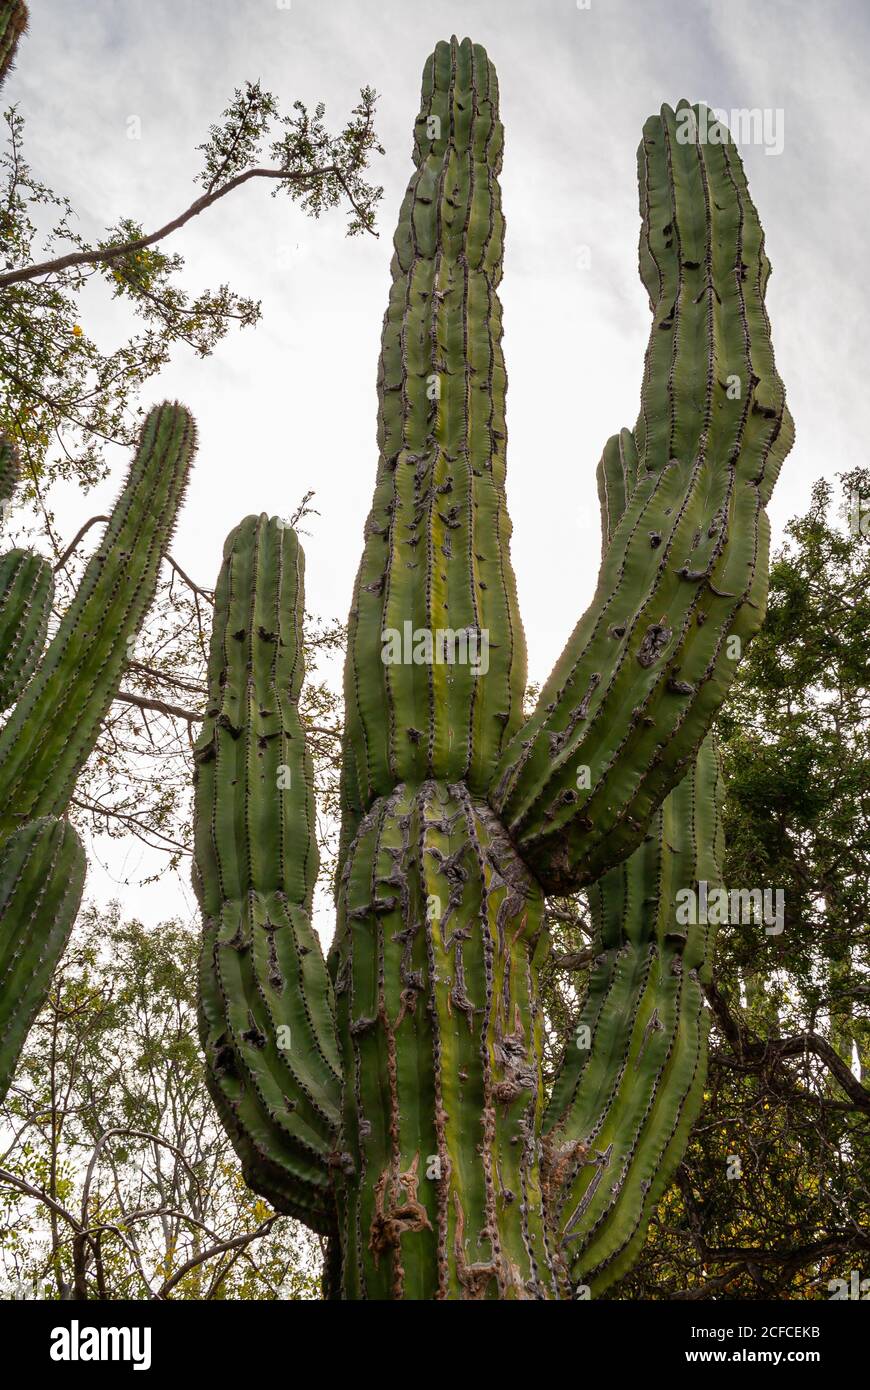 Baja California sur, Messico - 23 novembre 2008: Foreste secche della Sierra de la Laguna. Cactus gigante elefante contro il cielo d'argento con verde vegetazione ar Foto Stock